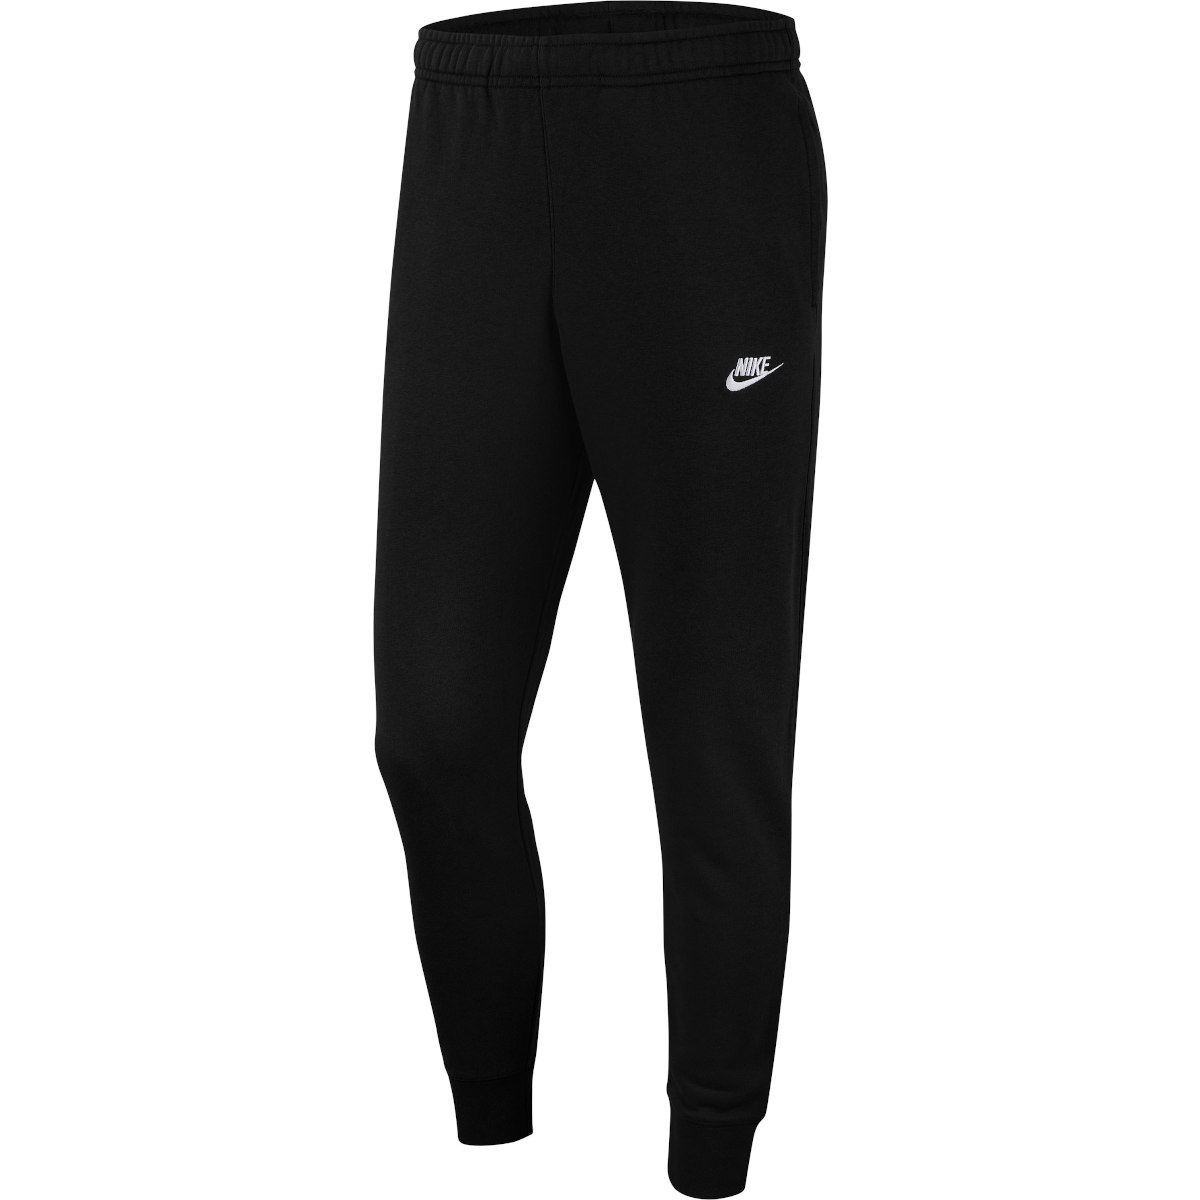 Produktbild von Nike Sportswear Club French Terry Jogginghose Herren - schwarz/schwarz/weiß BV2679-010